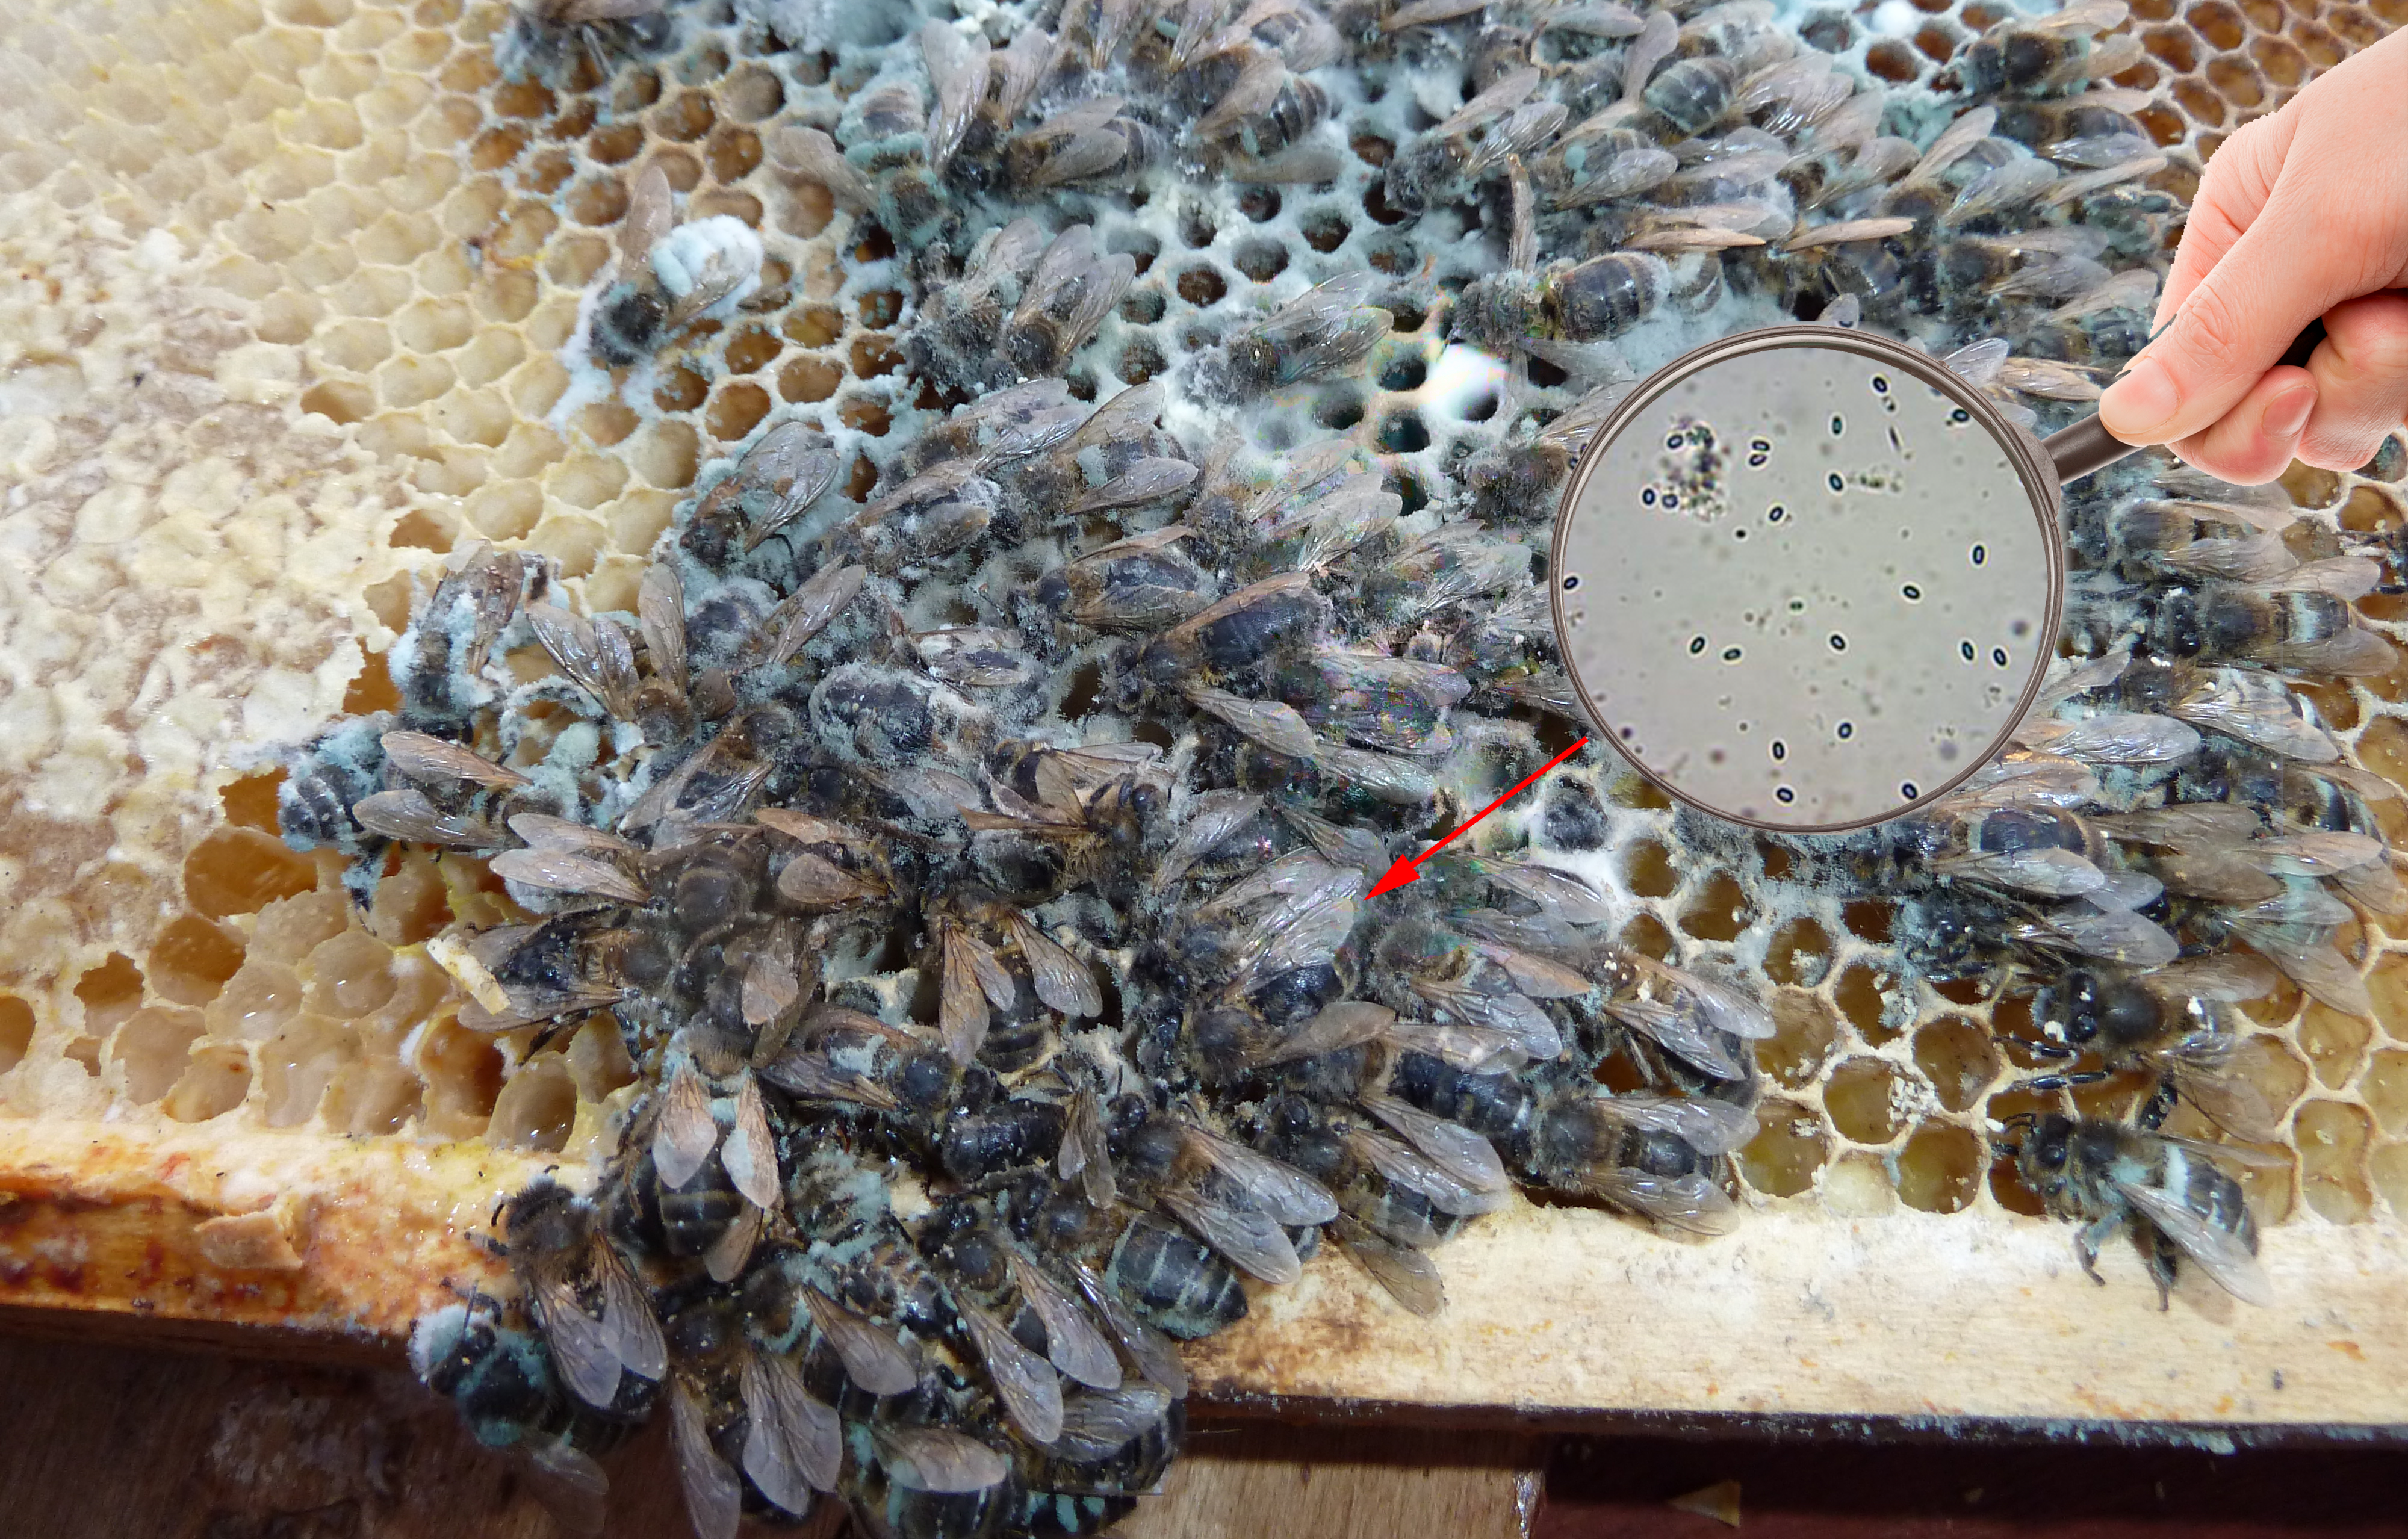 Инвазионные болезни медоносных пчел — agroxxi